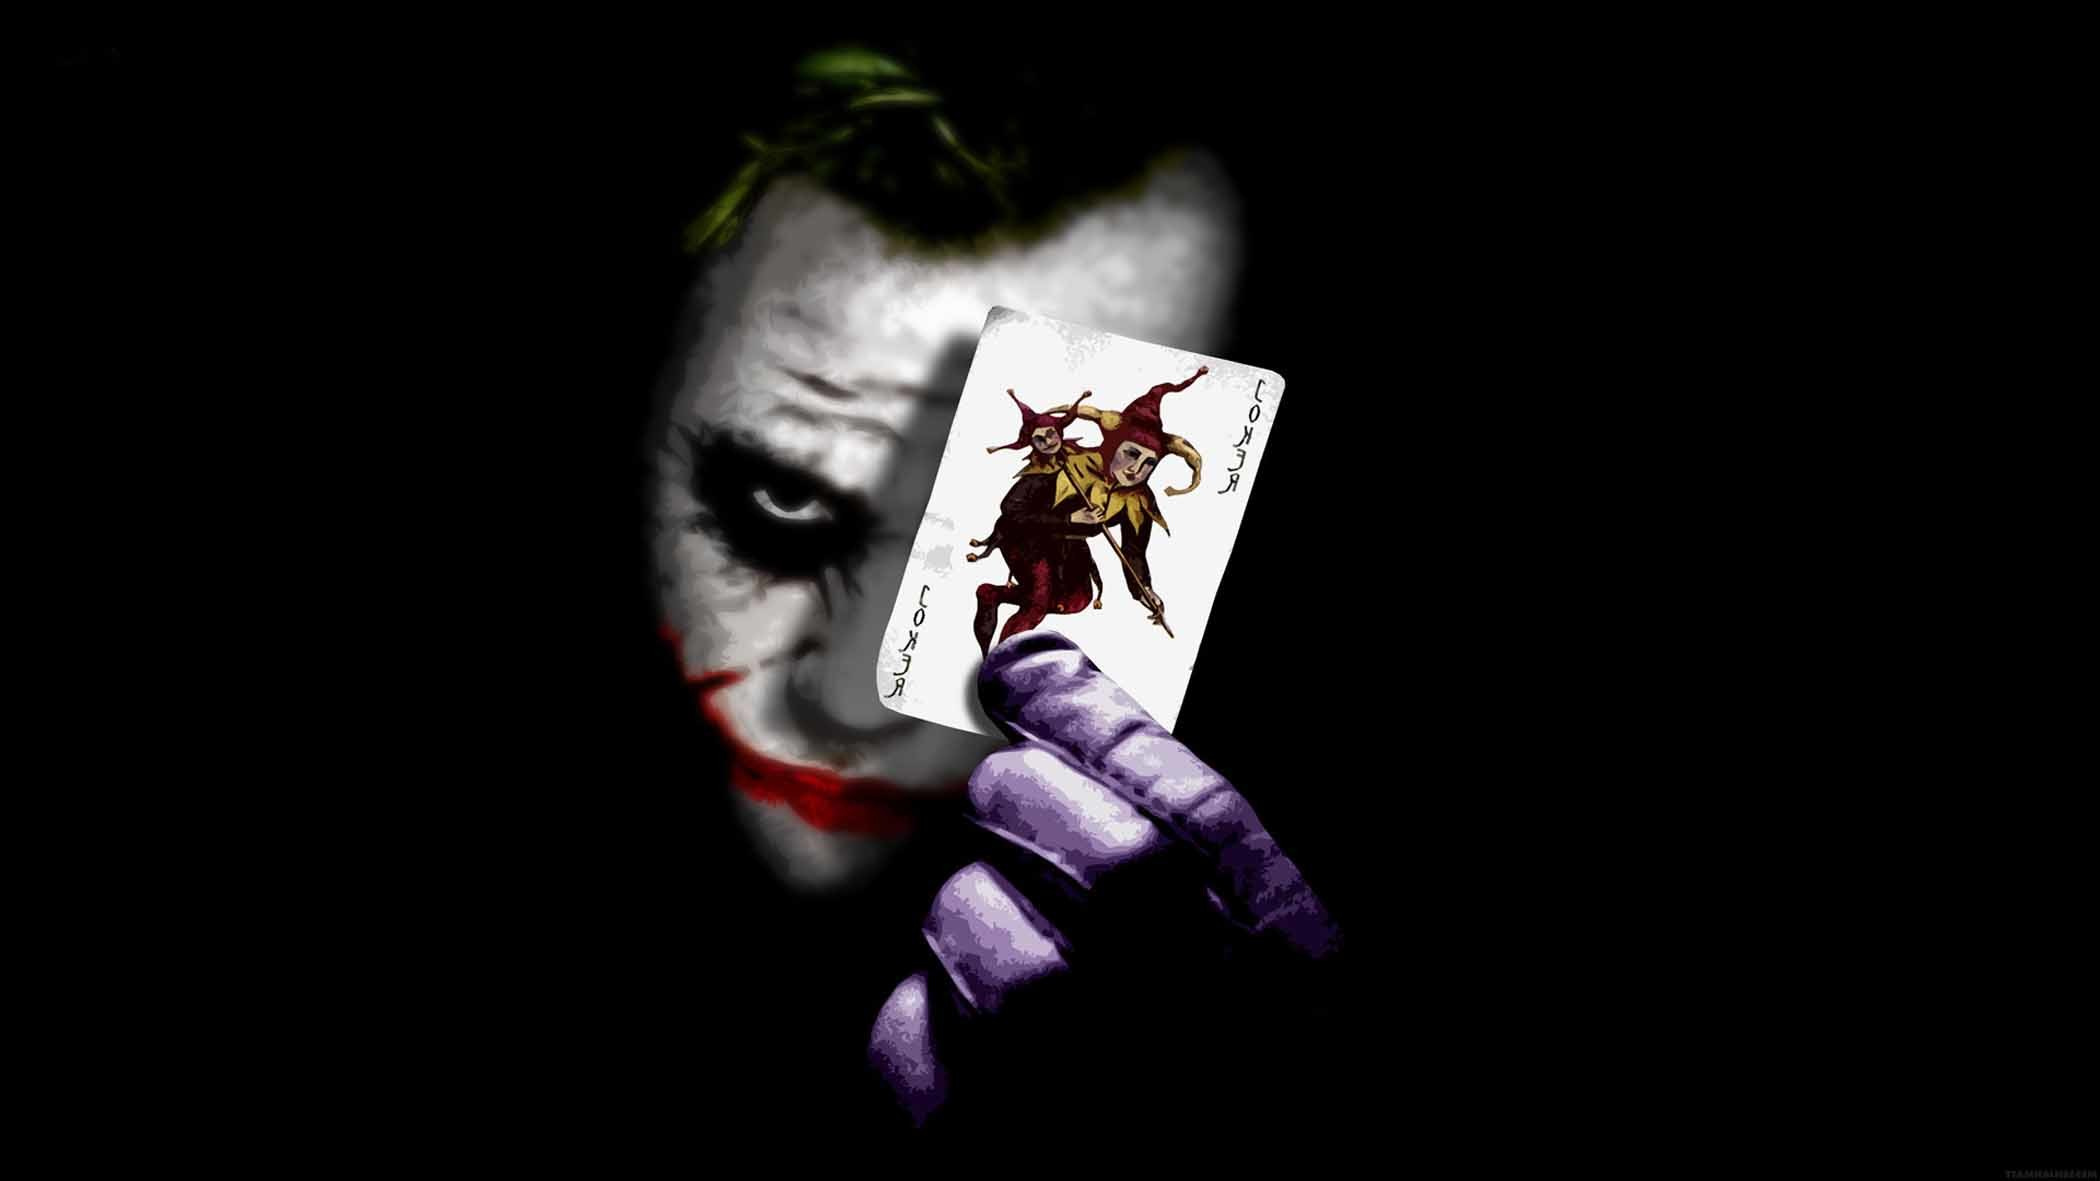 Joker play card